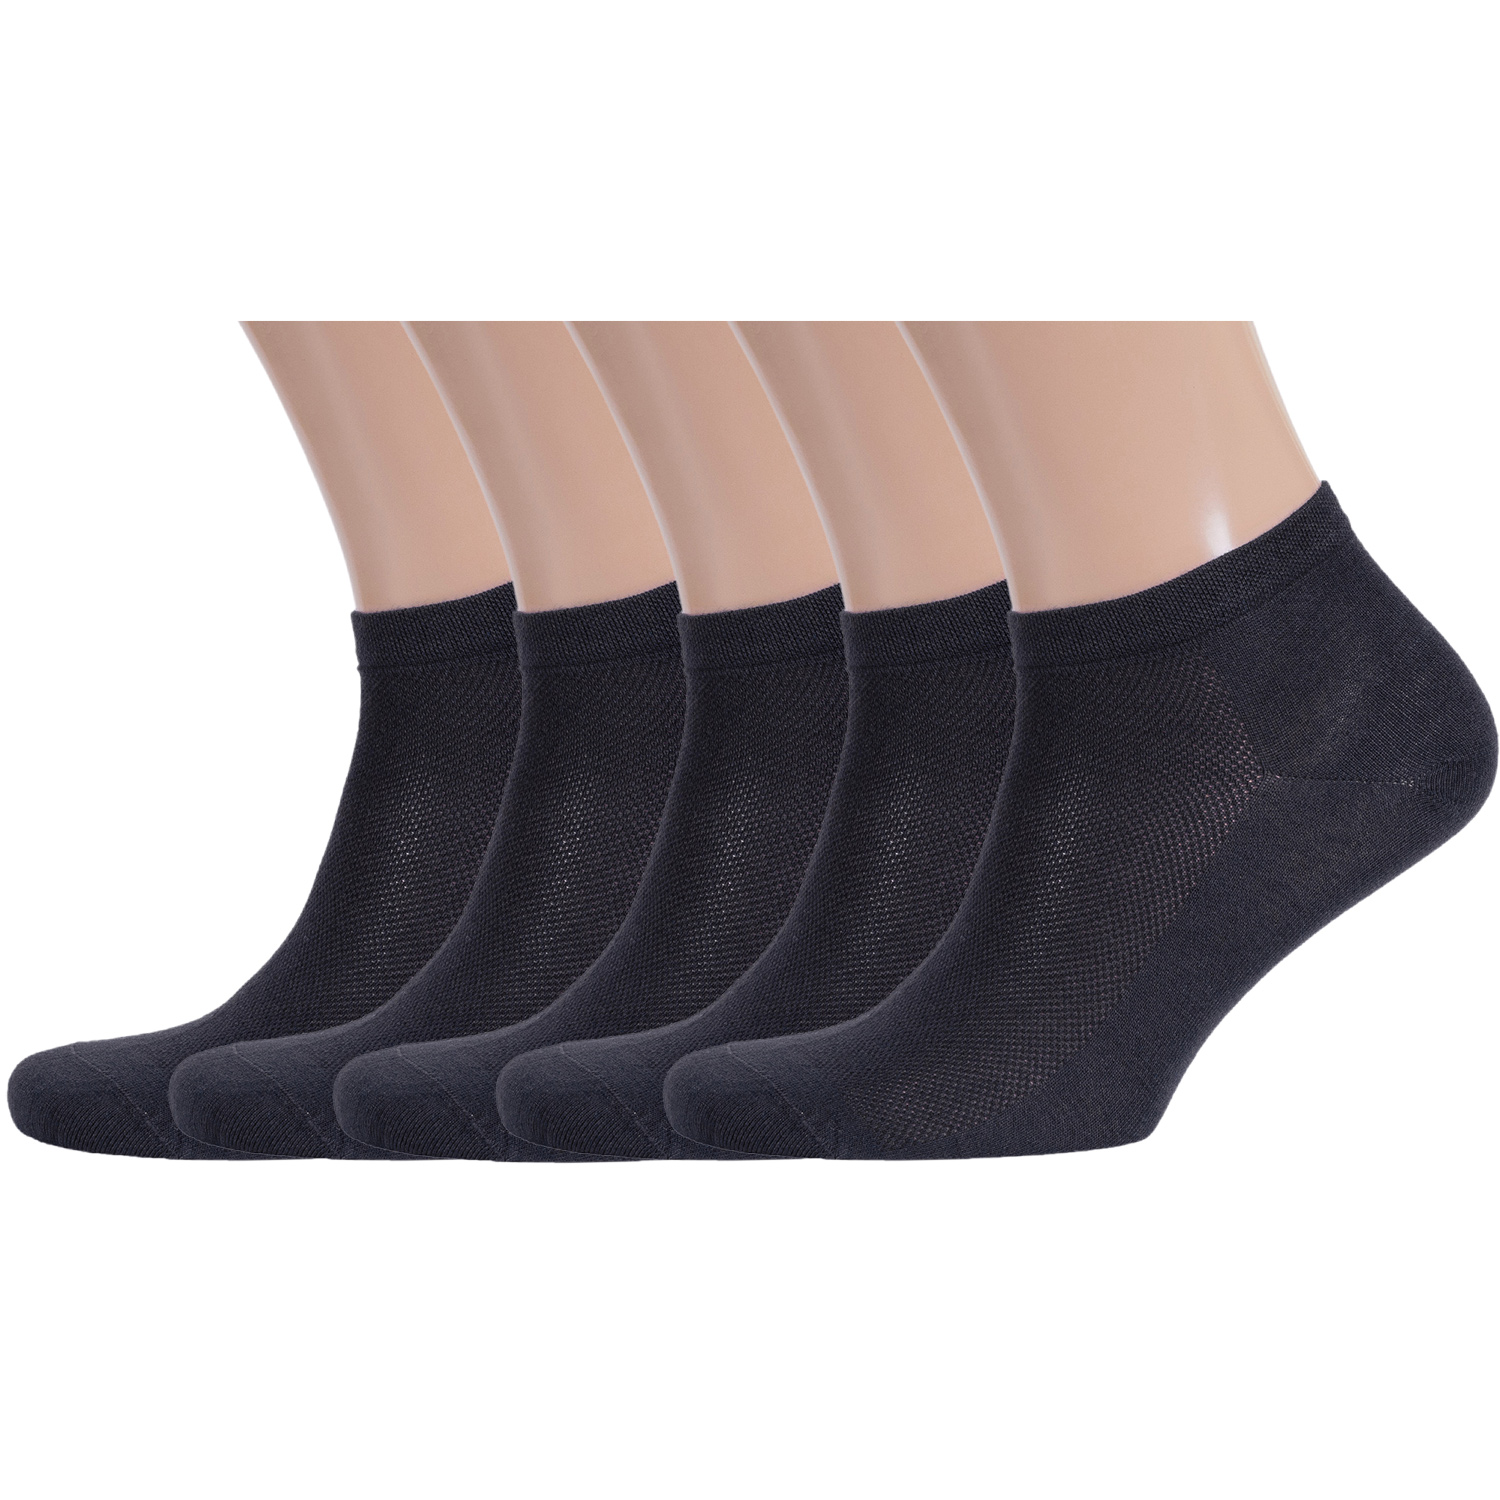 Комплект носков мужских Rusocks серых